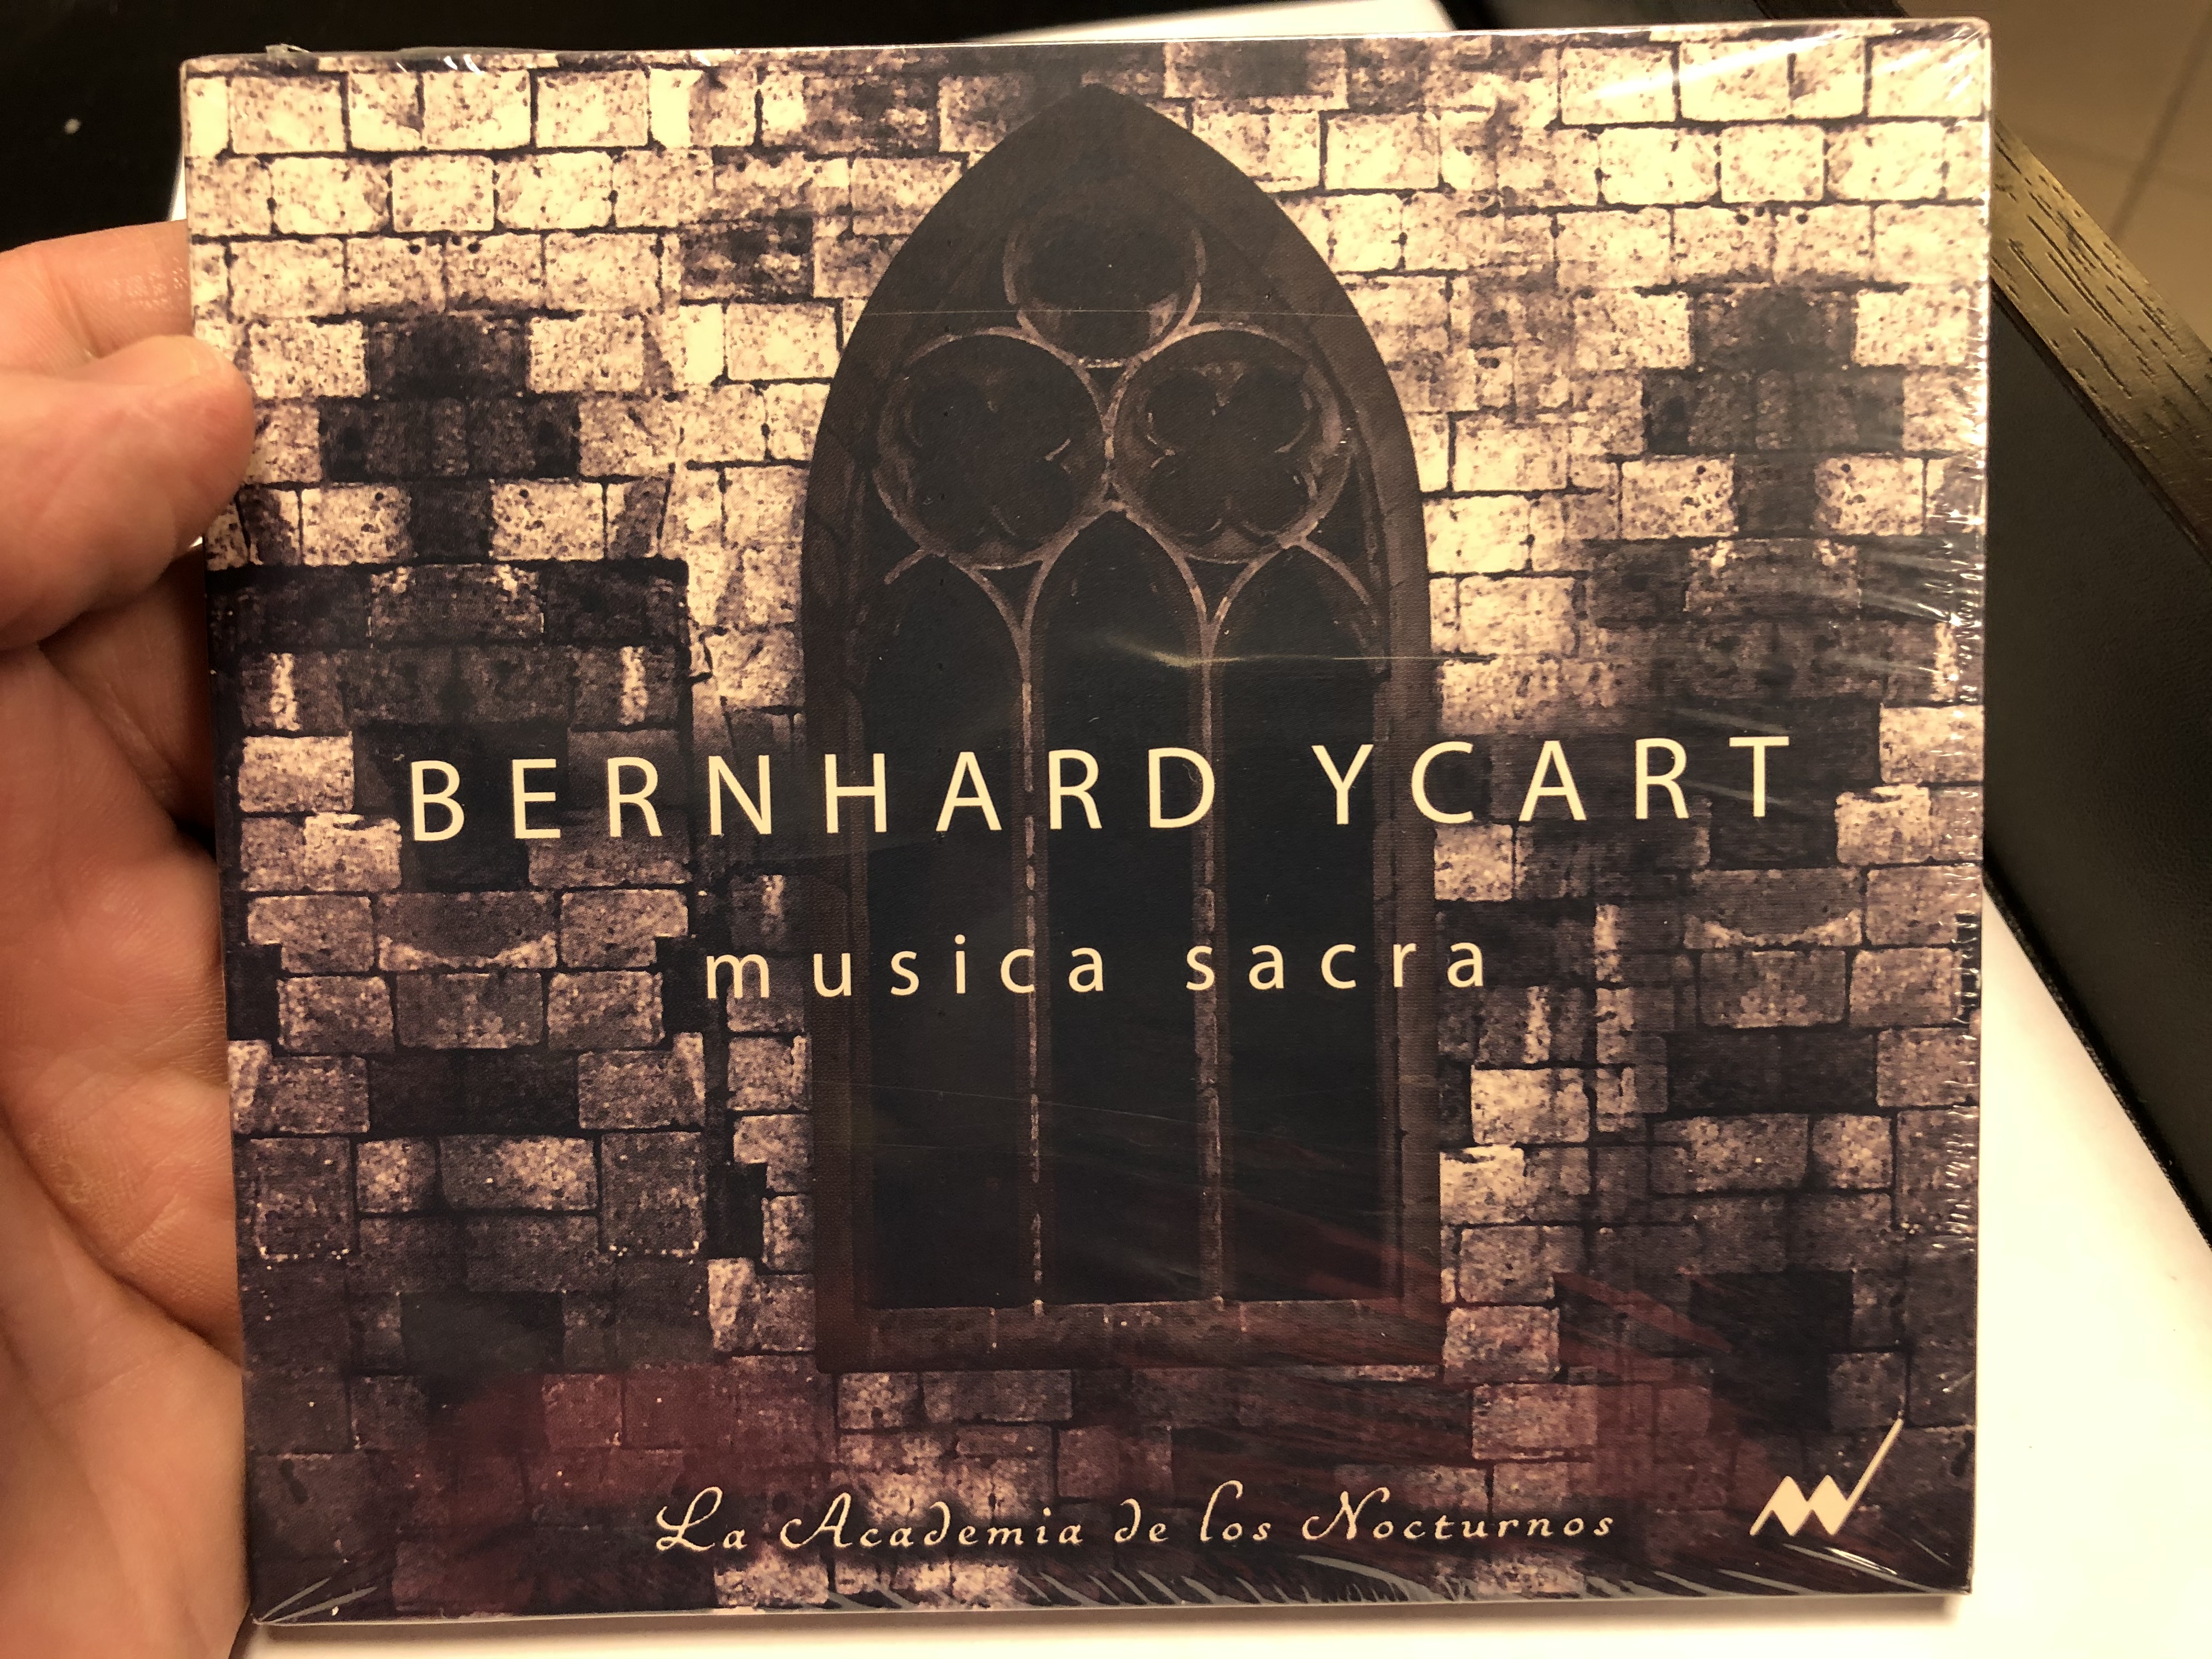 bernhard-ycart-musica-sacra-la-academia-de-los-nocturnos-custos-records-audio-cd-2019-cr1001-1-.jpg